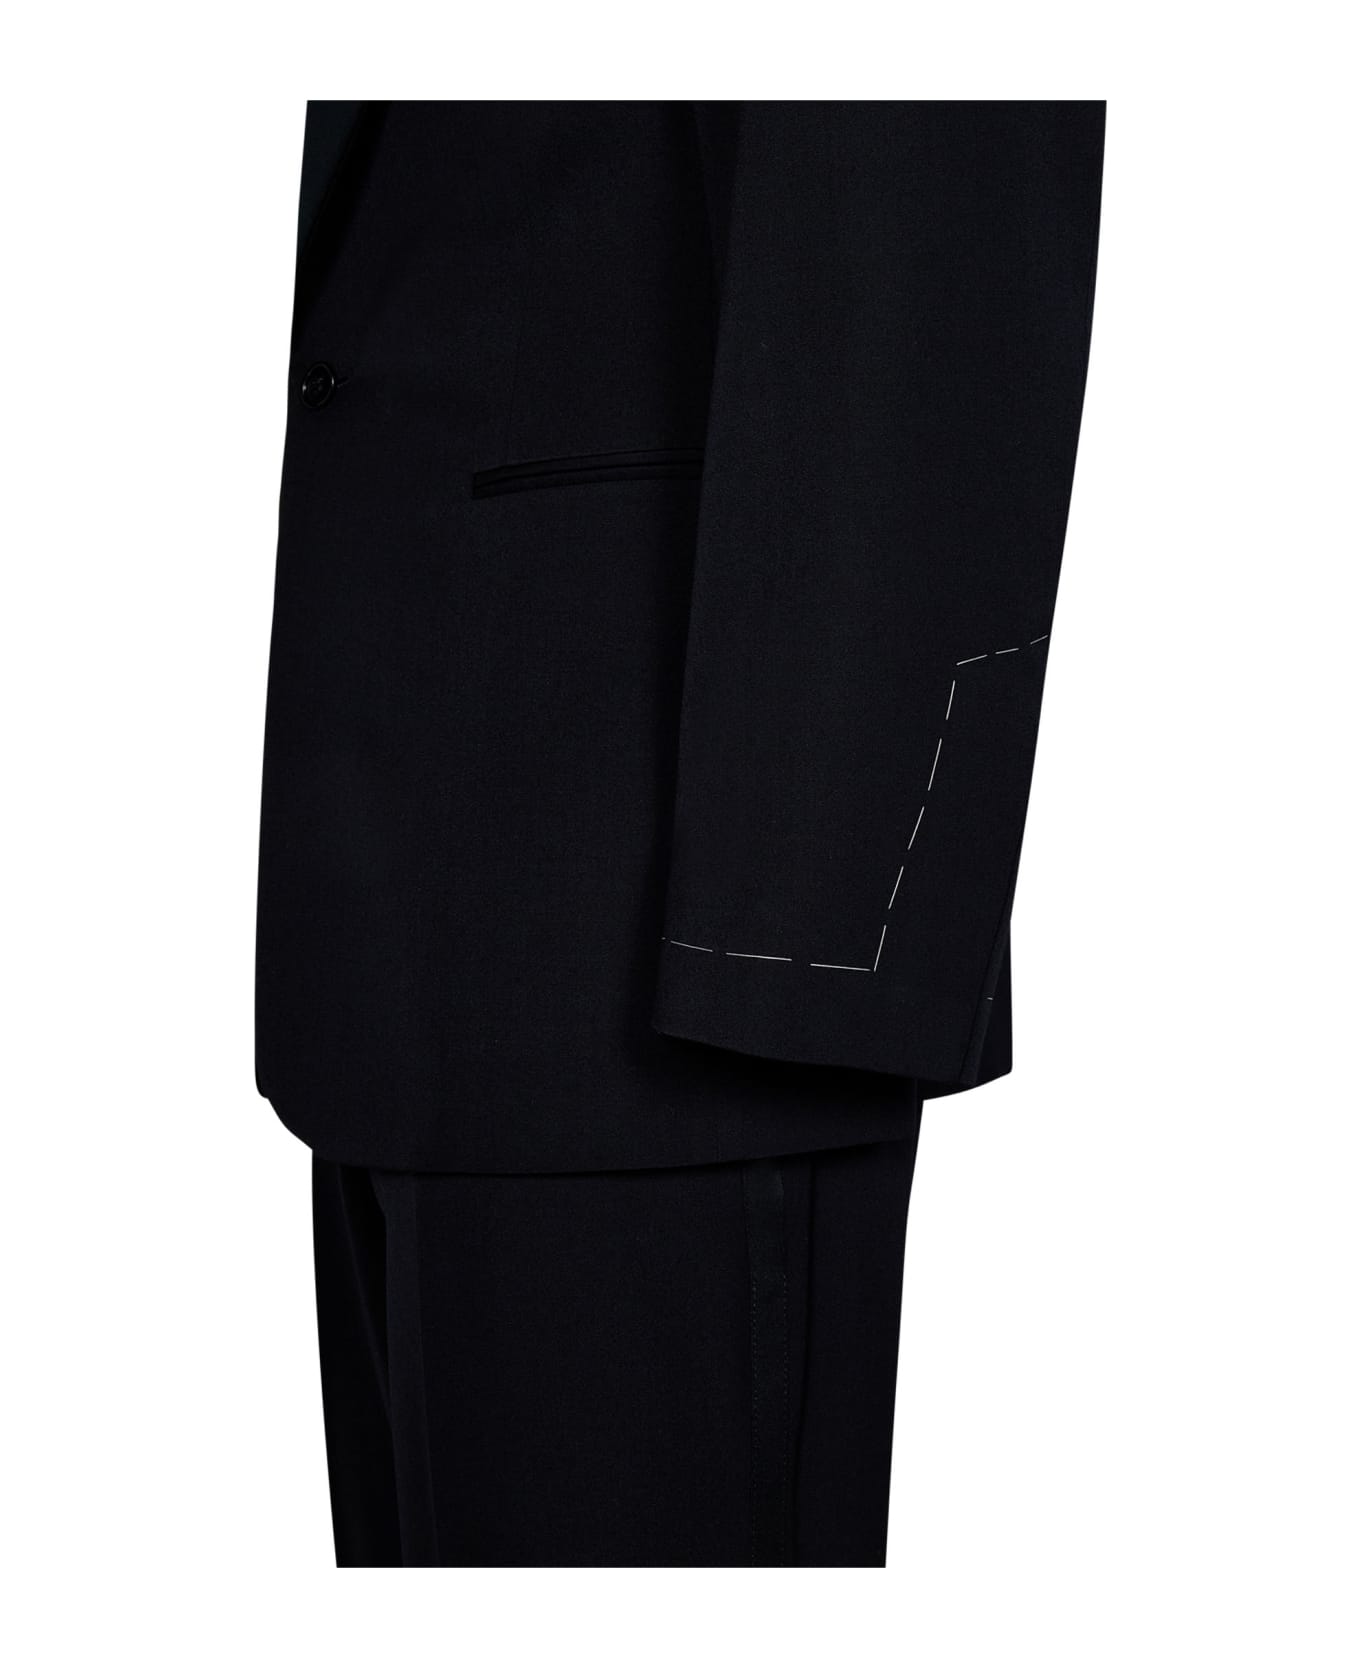 Ralph Lauren Suit - Black